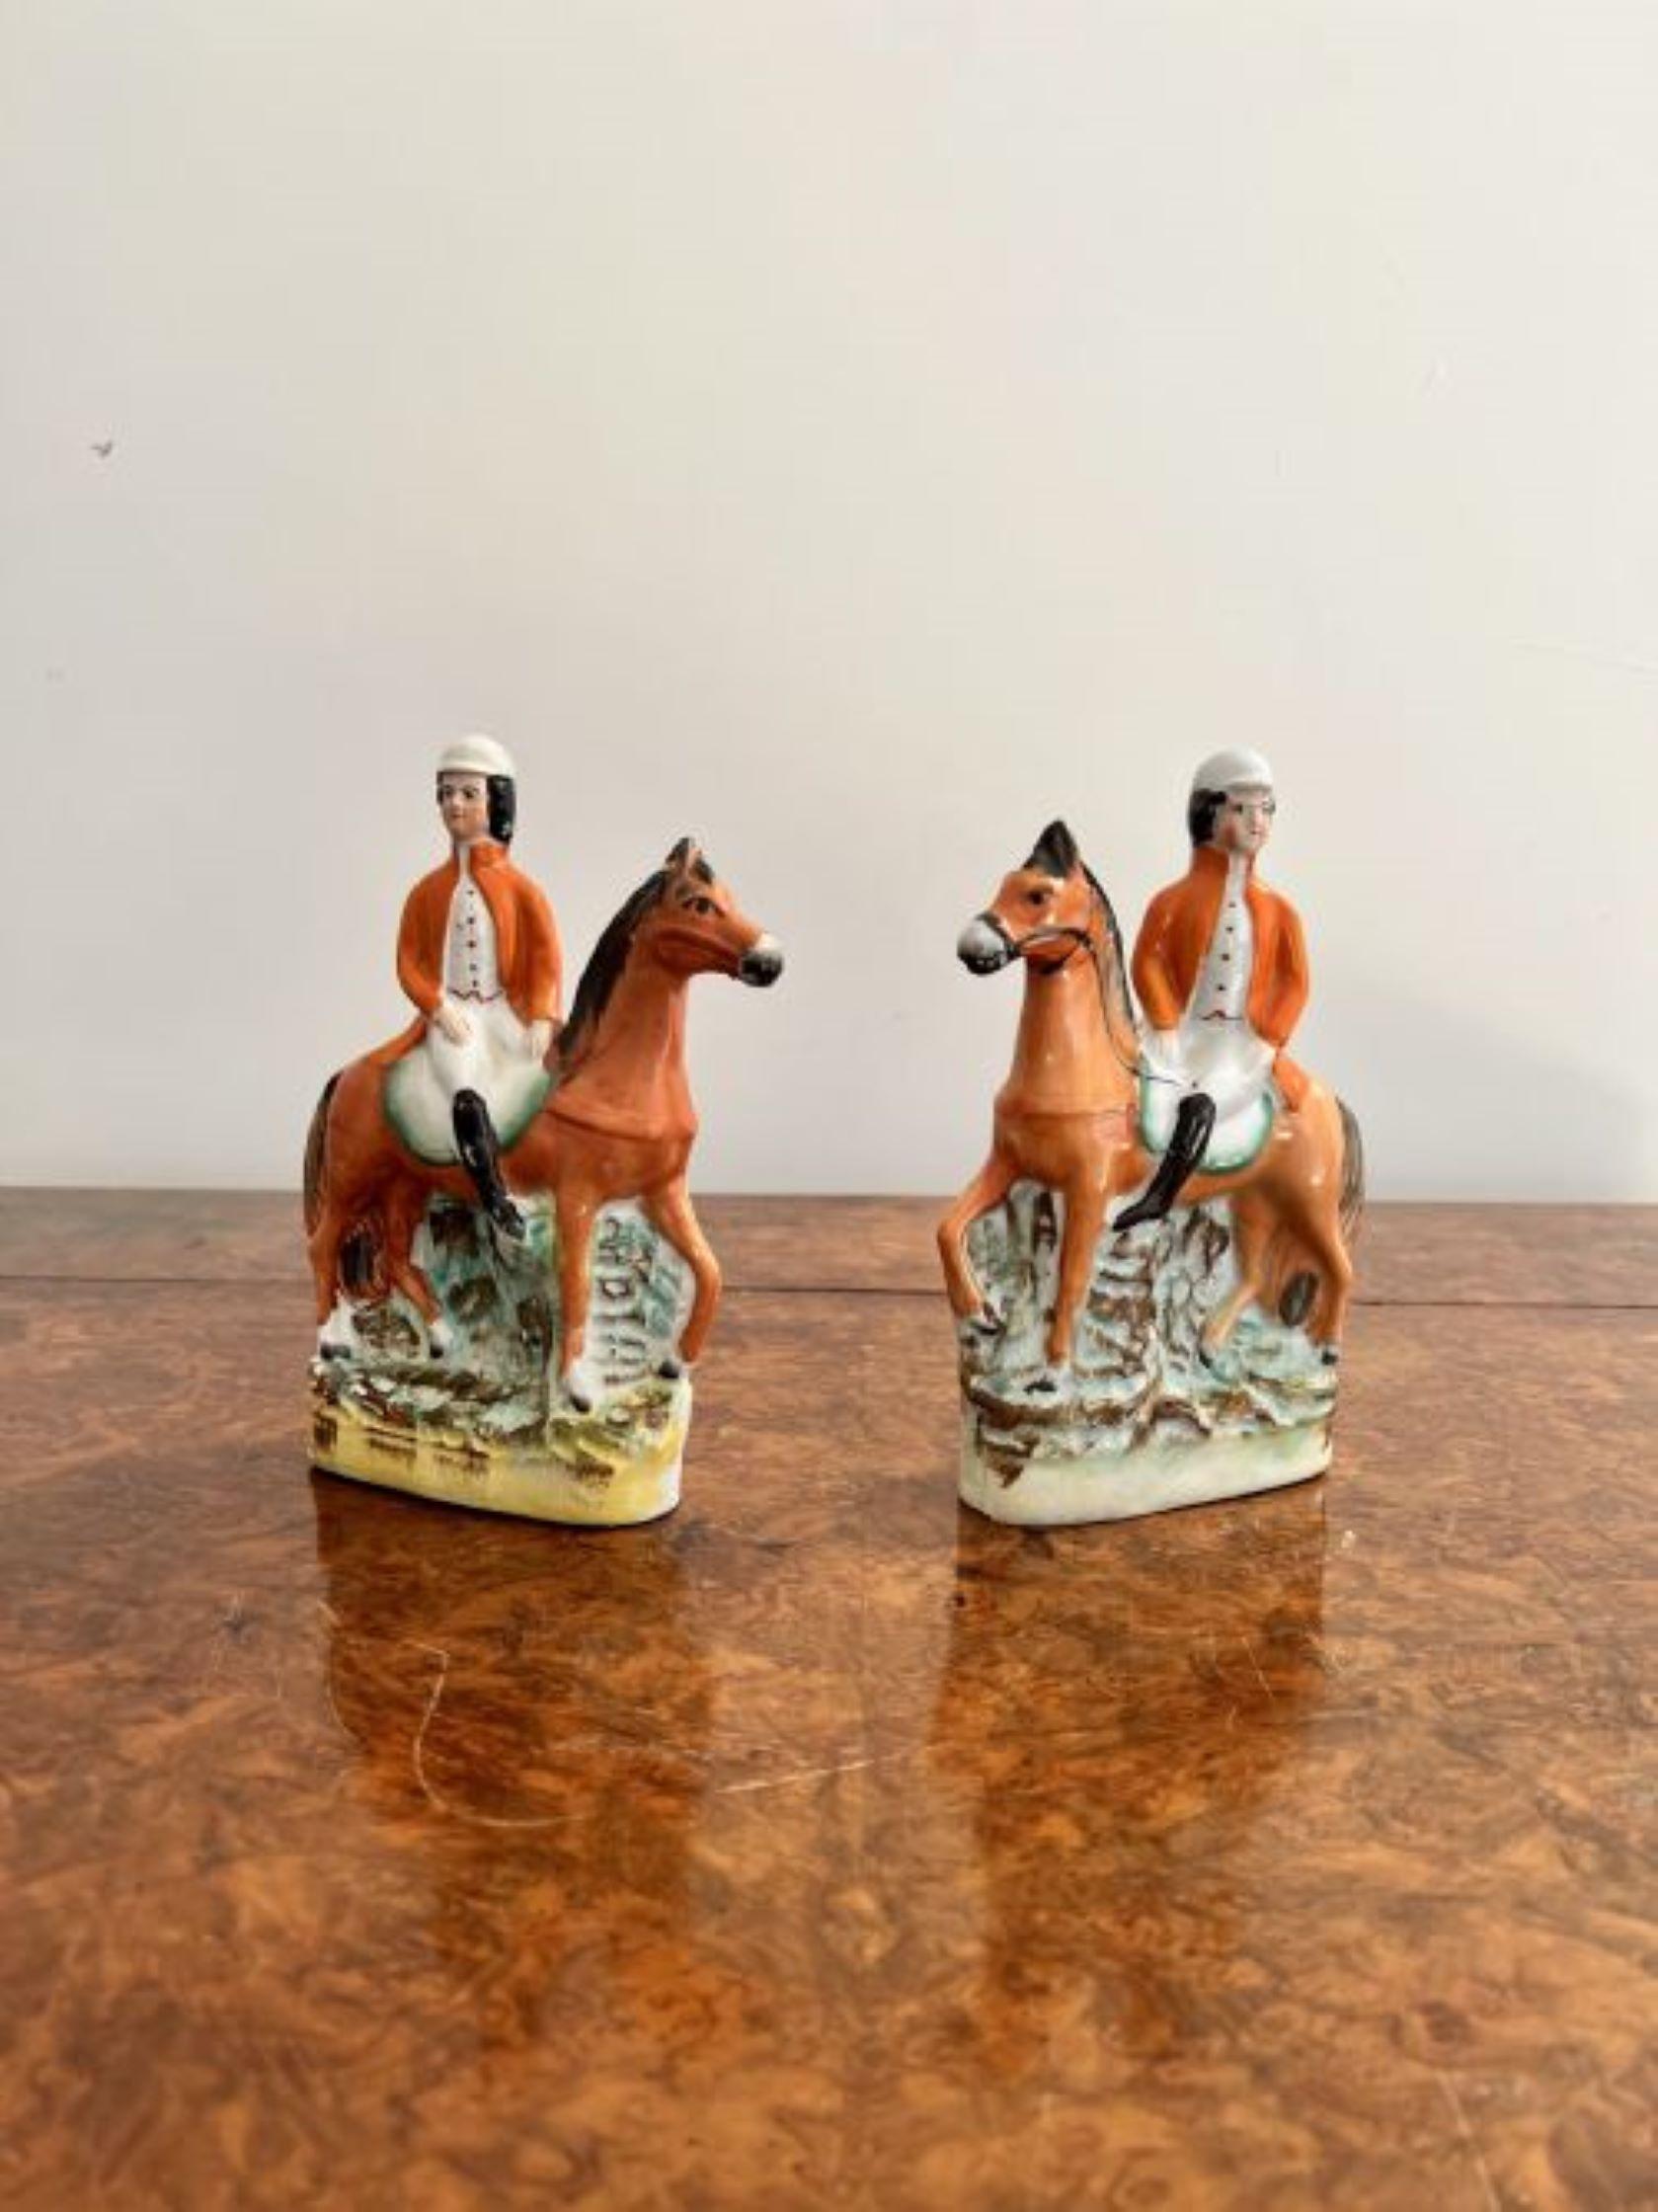 Hochwertiges Paar antiker viktorianischer Staffordshire-Figuren mit einem Paar hochwertiger viktorianischer Staffordshire-Figuren von zwei Fuchsjägern zu Pferd auf der Jagd, handbemalt in wunderschönen braunen, orangen, weißen und grünen Farben auf